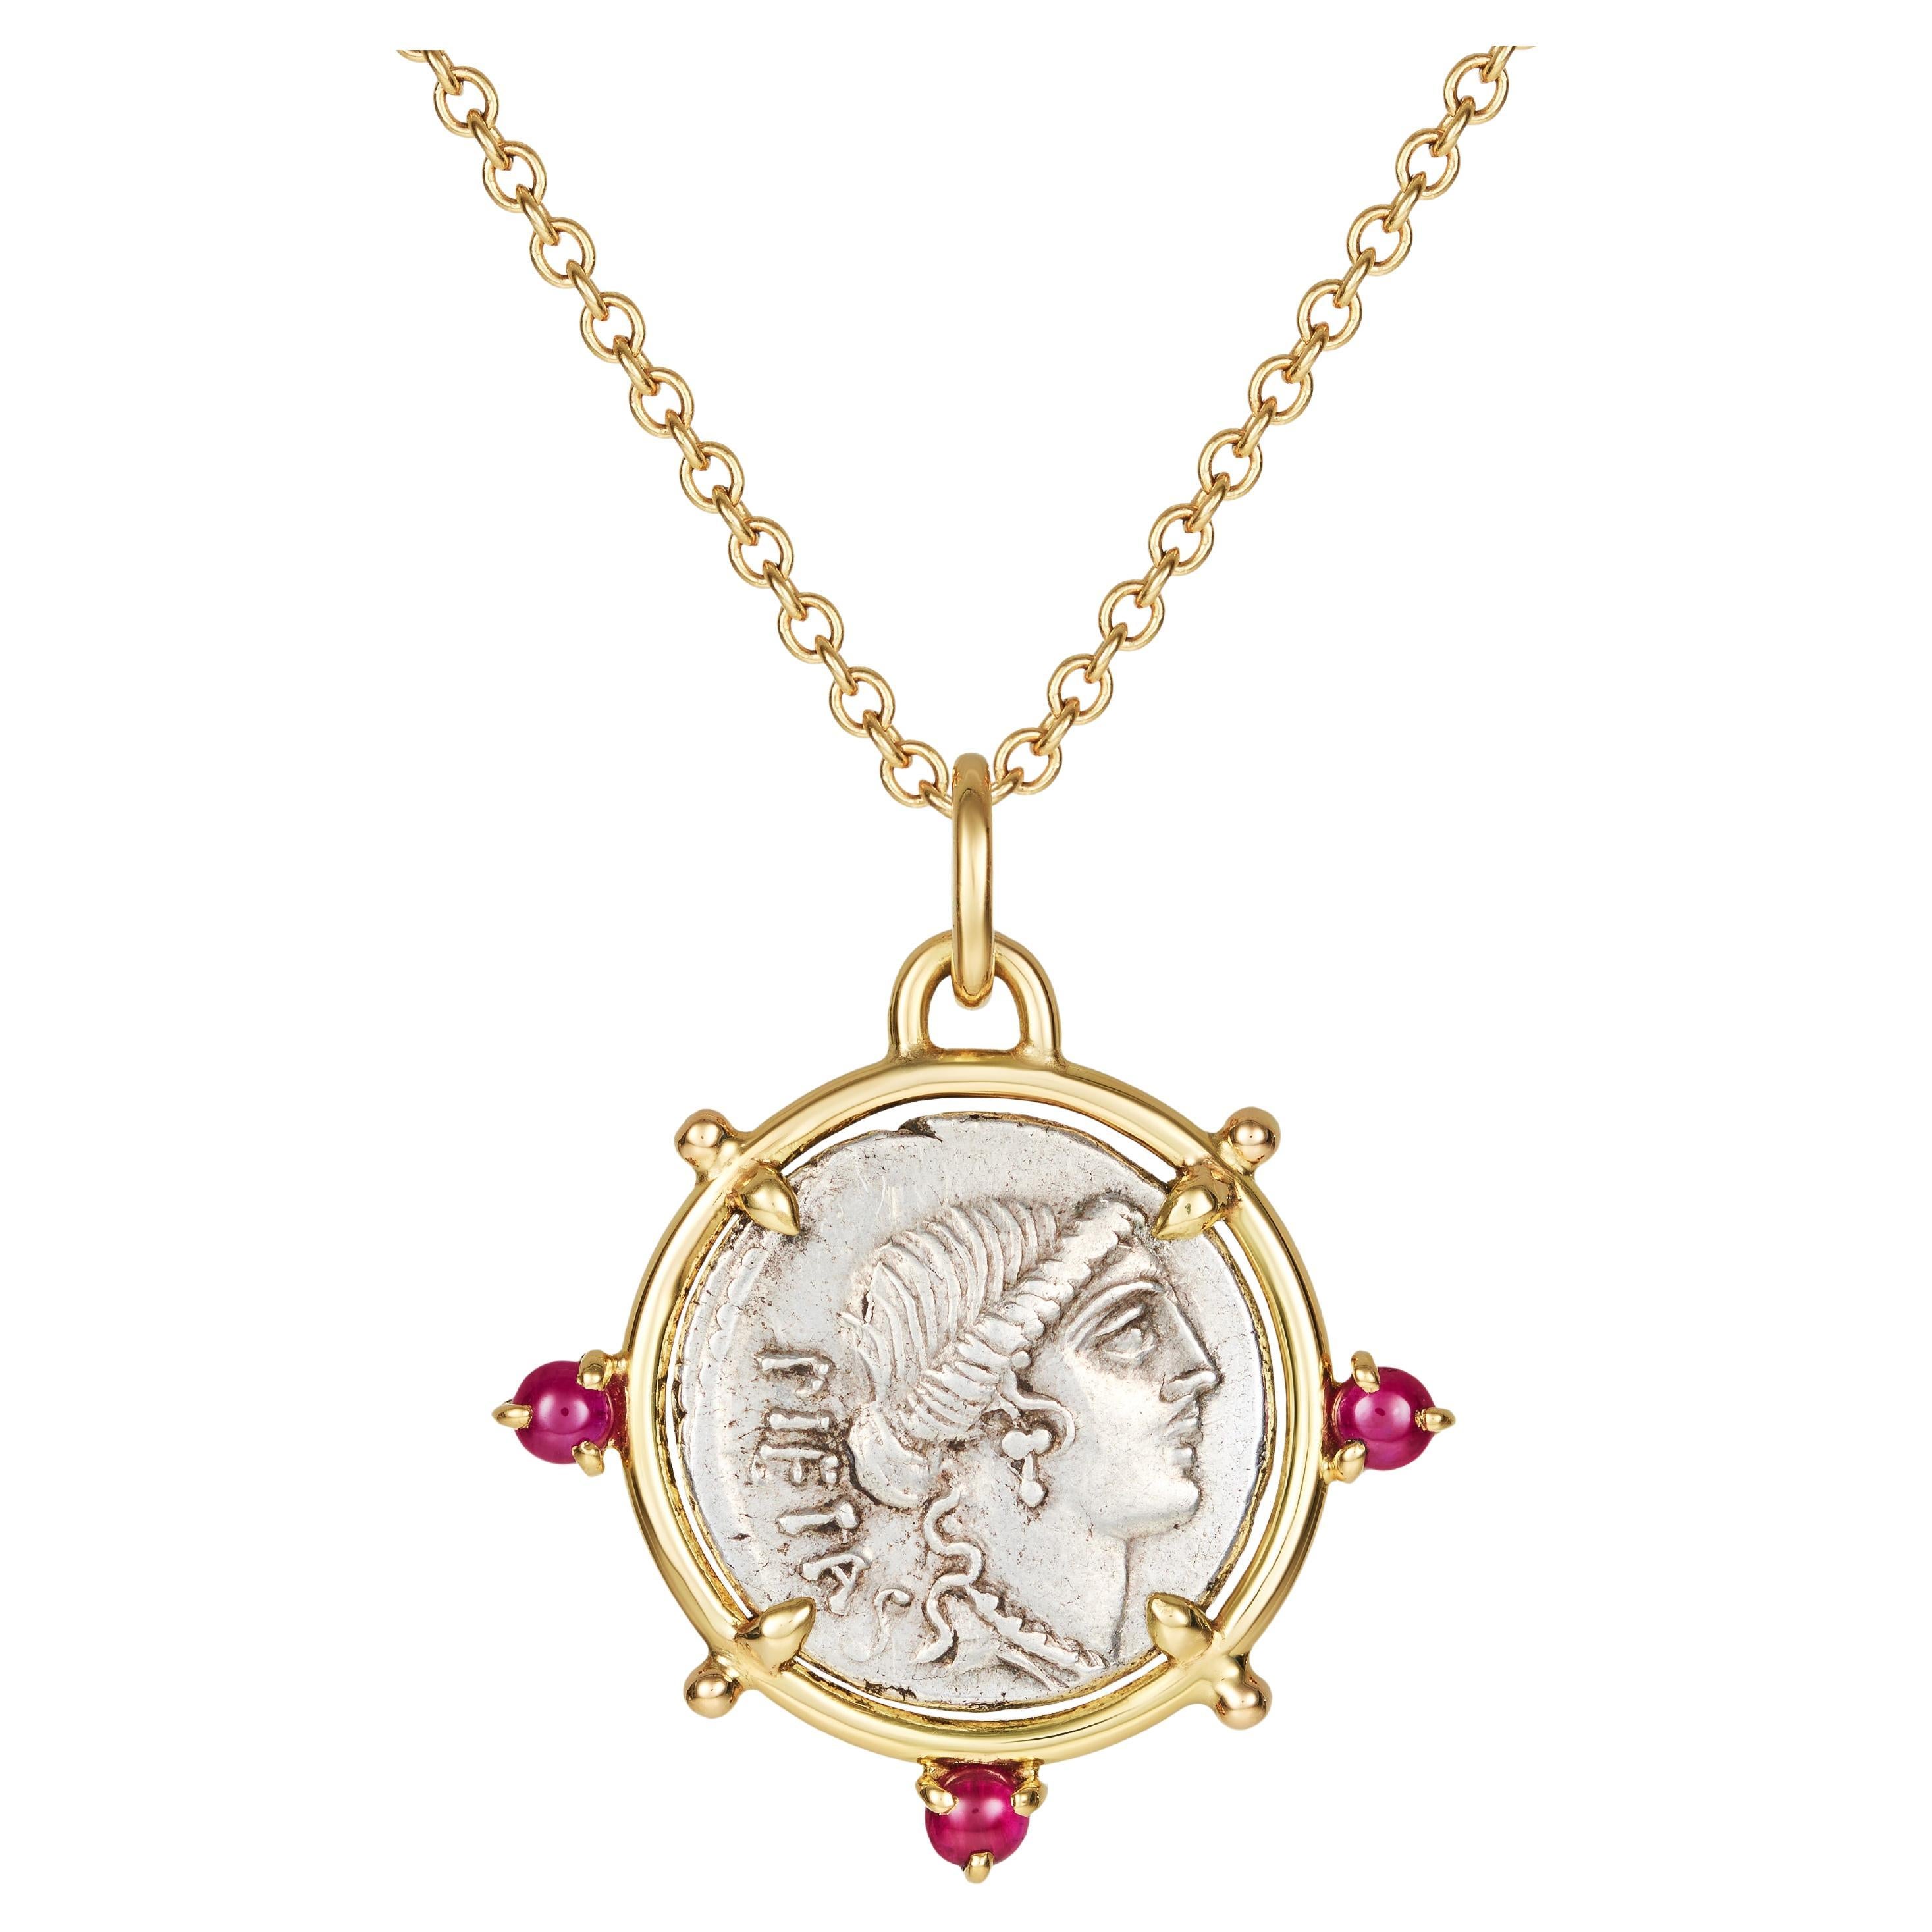 Dubini Pietas Goddess Ancient Roman Silver Coin Pendant 18K Yellow Gold Necklace